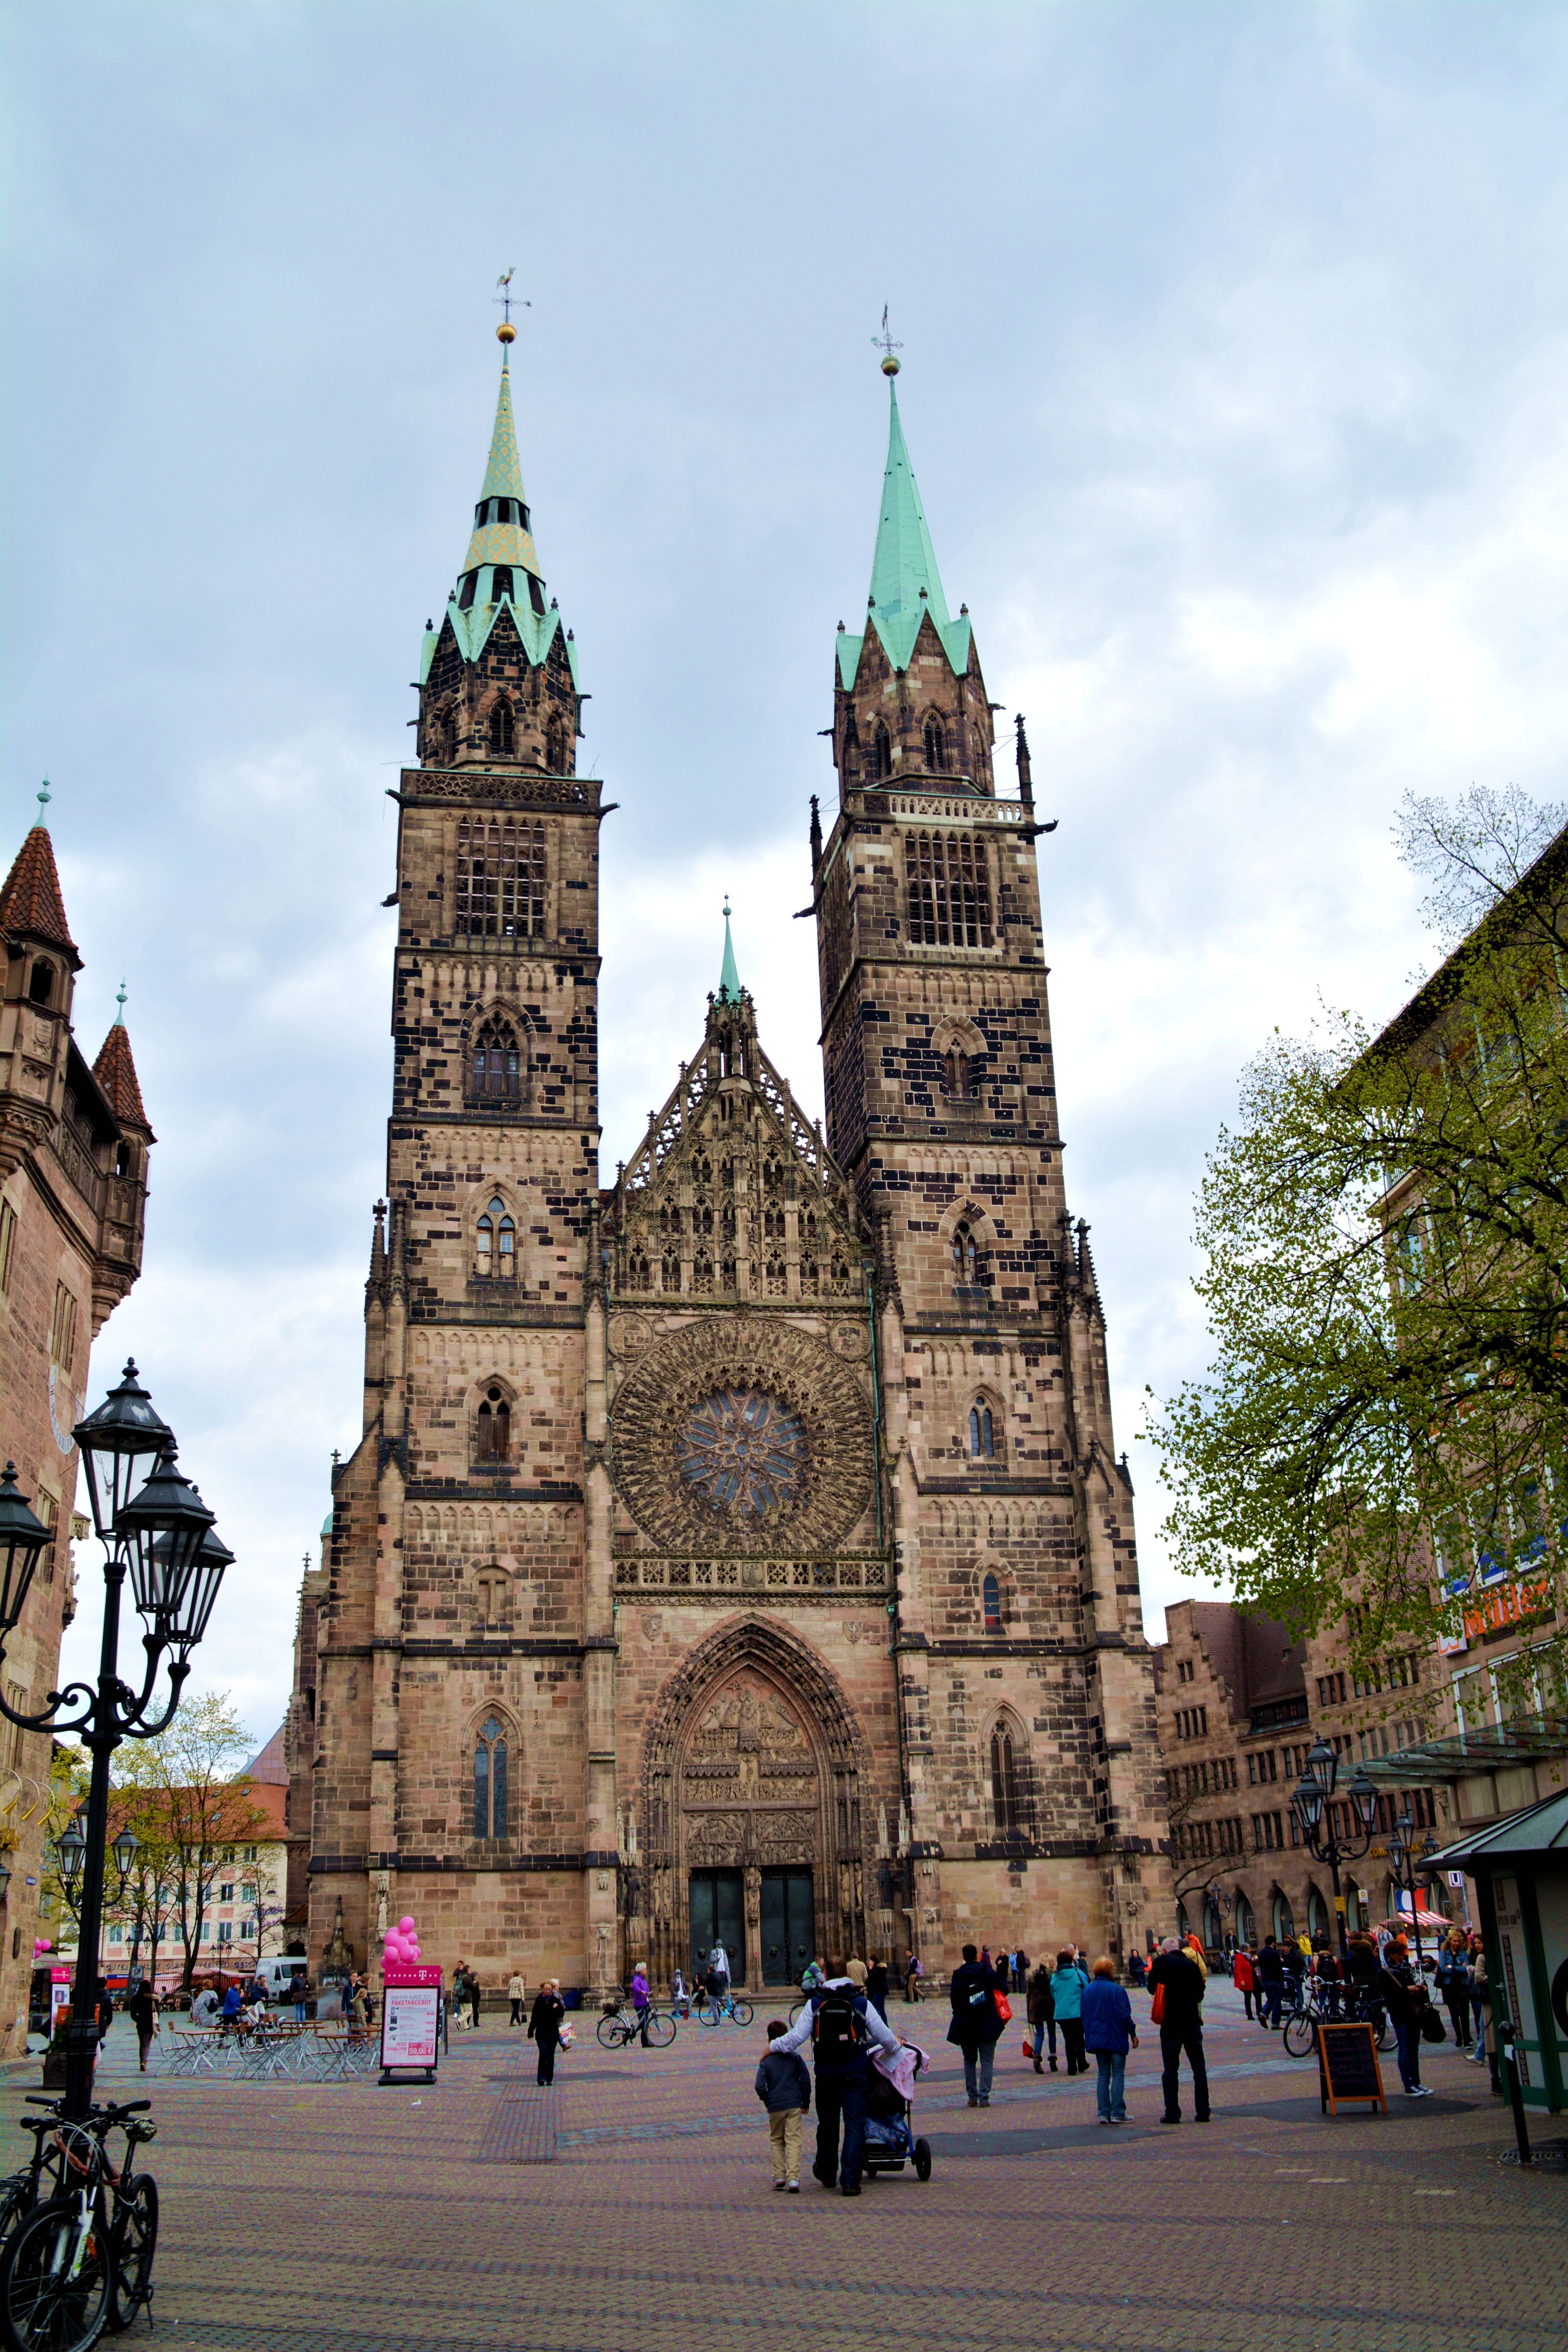 【携程攻略】纽伦堡圣劳伦茨教堂景点,圣劳伦茨教堂是建于1270年